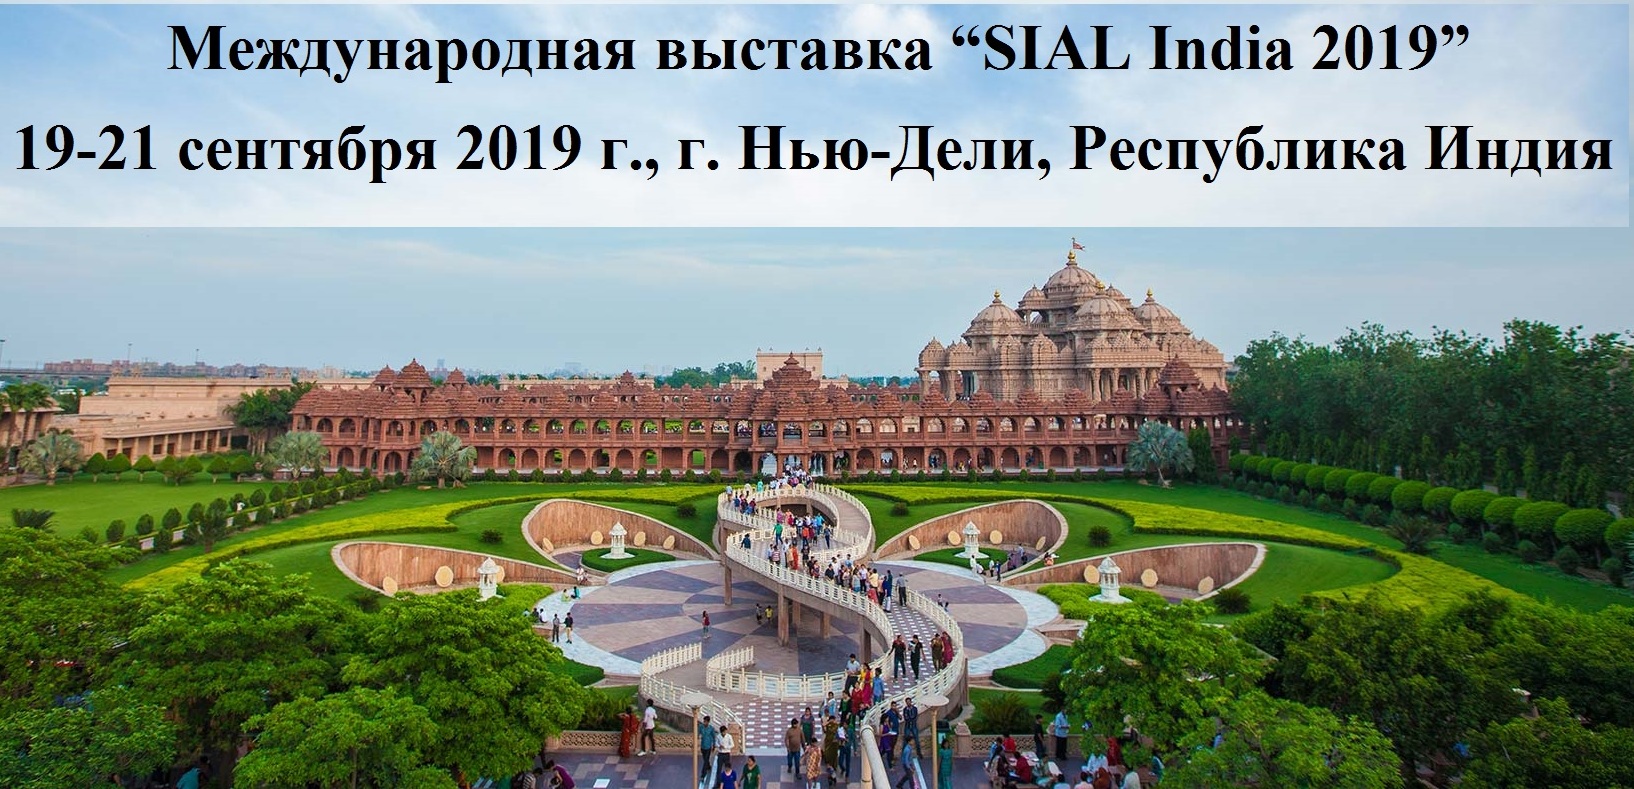 Международная выставка “SIAL India 2019”